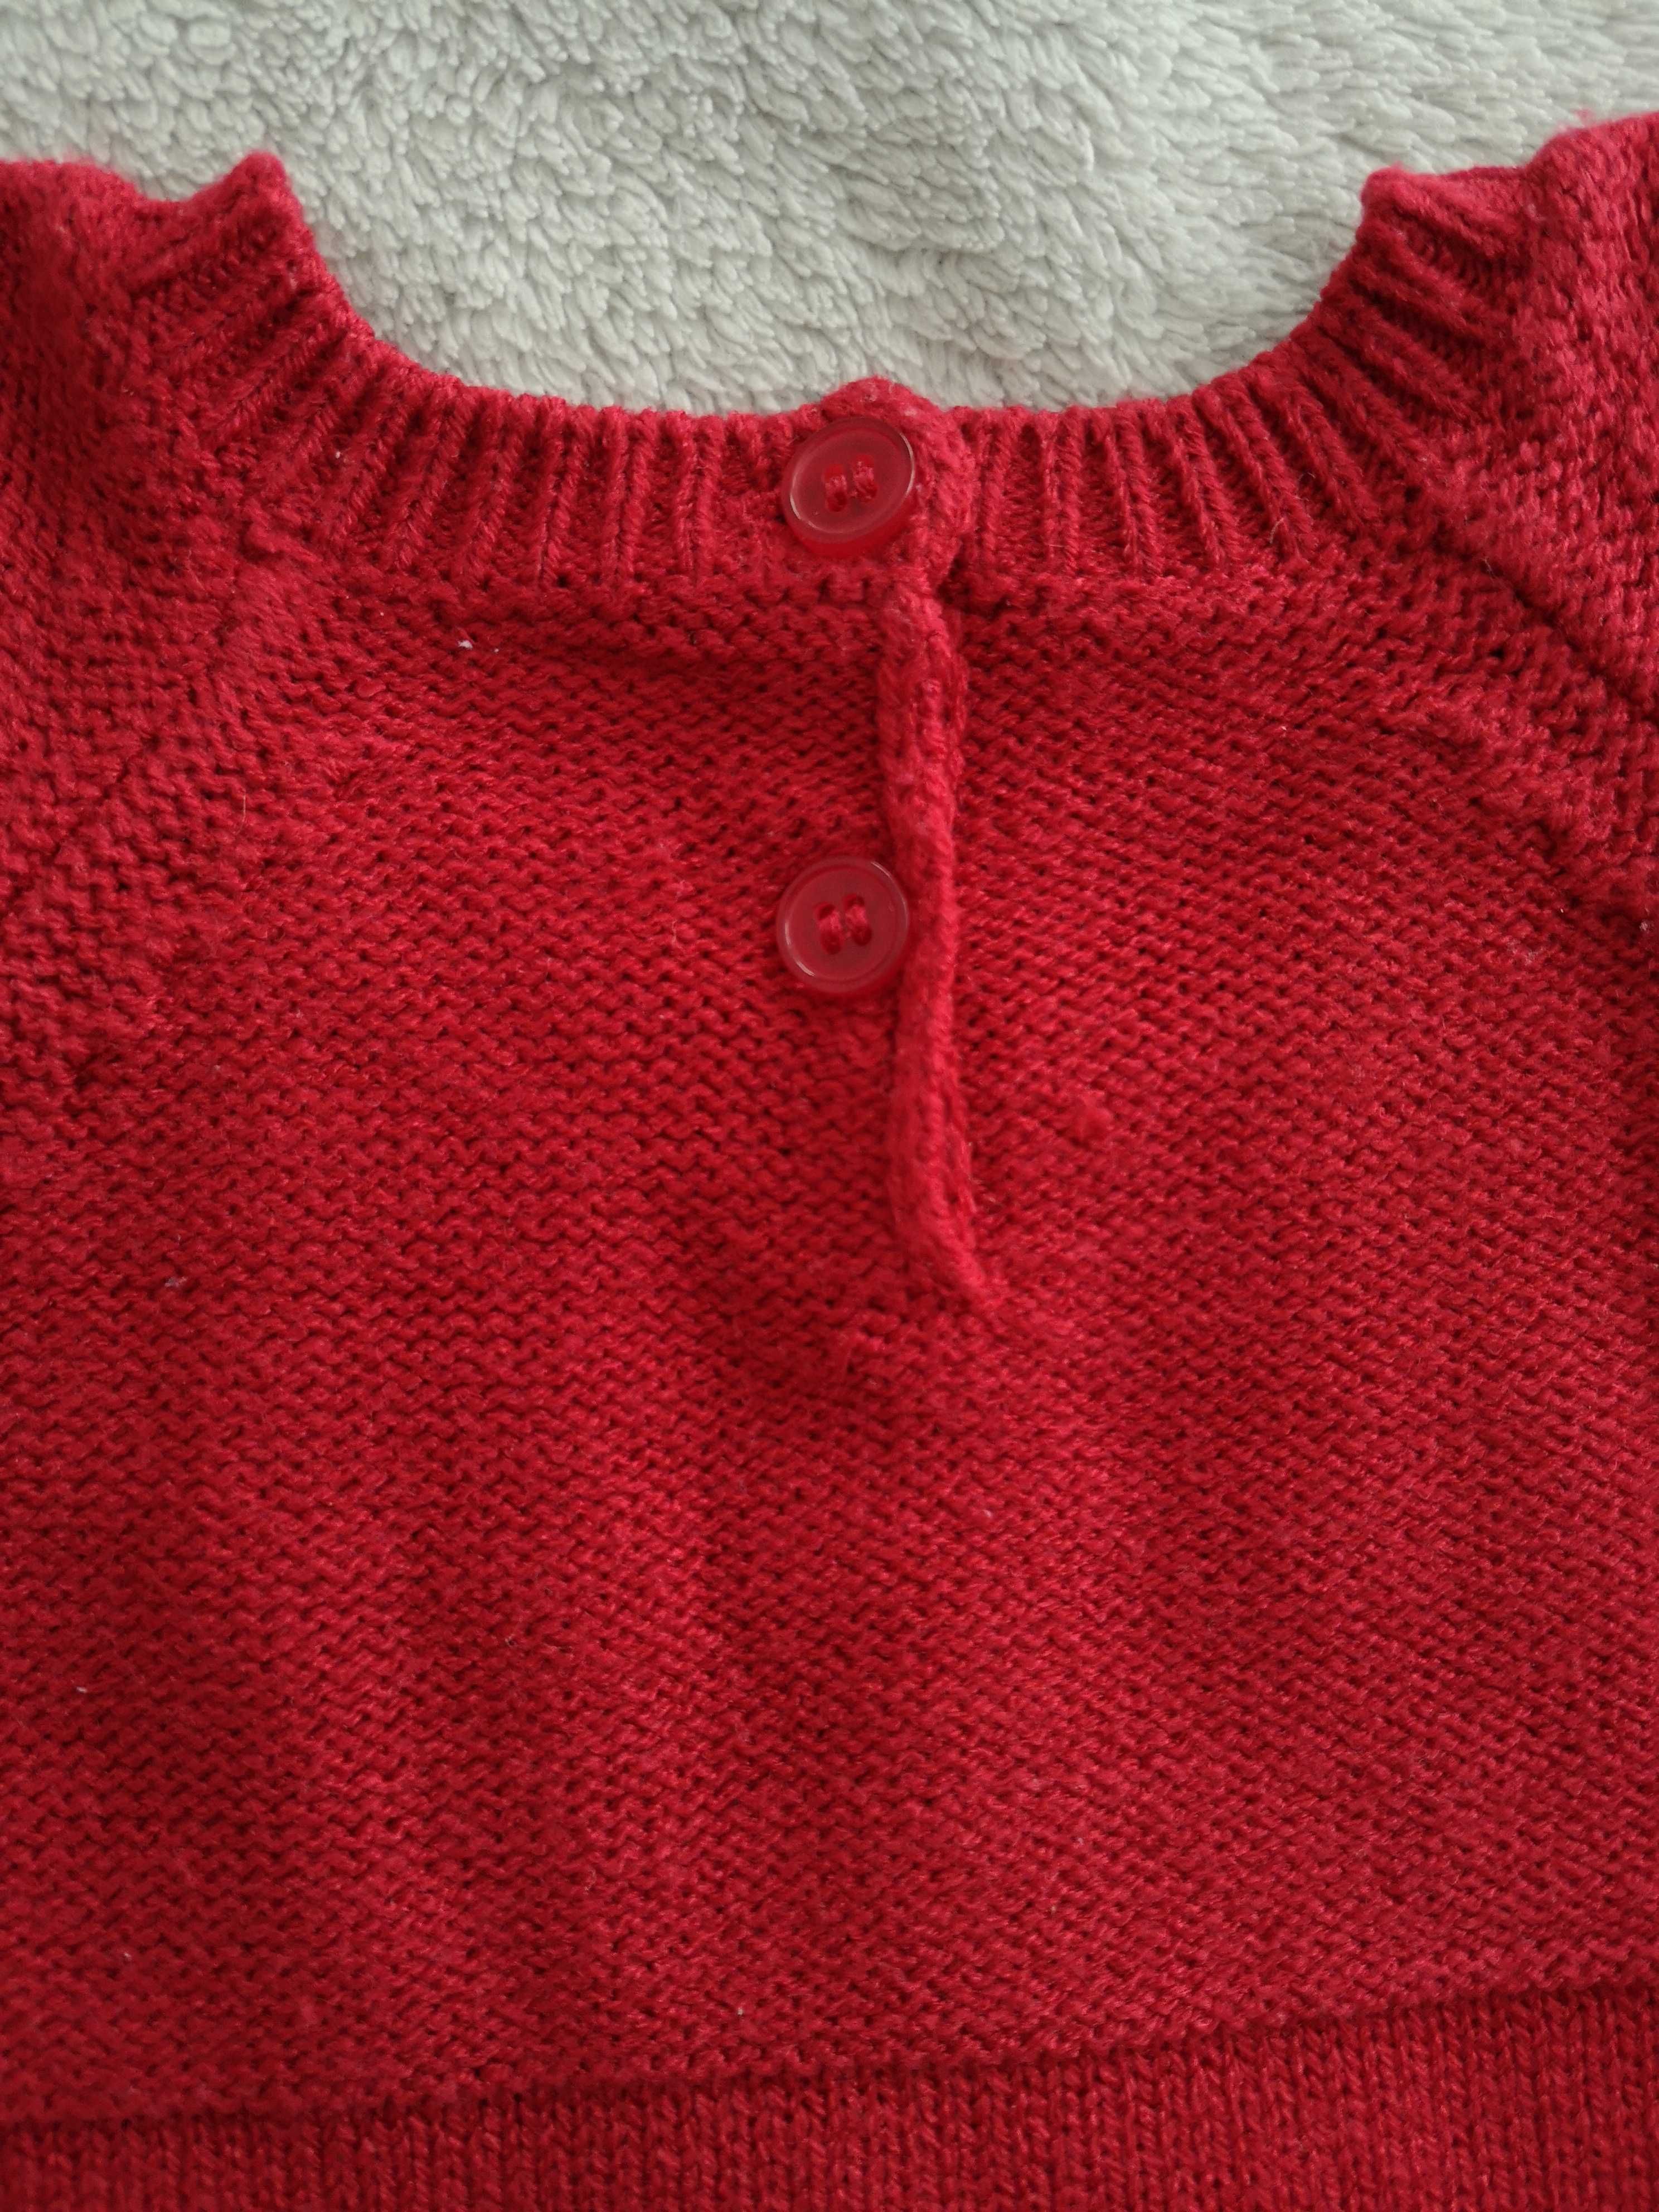 Czerwona sweterkowa elegancka sukienka kulki pompony 68 - 74 jak nowa